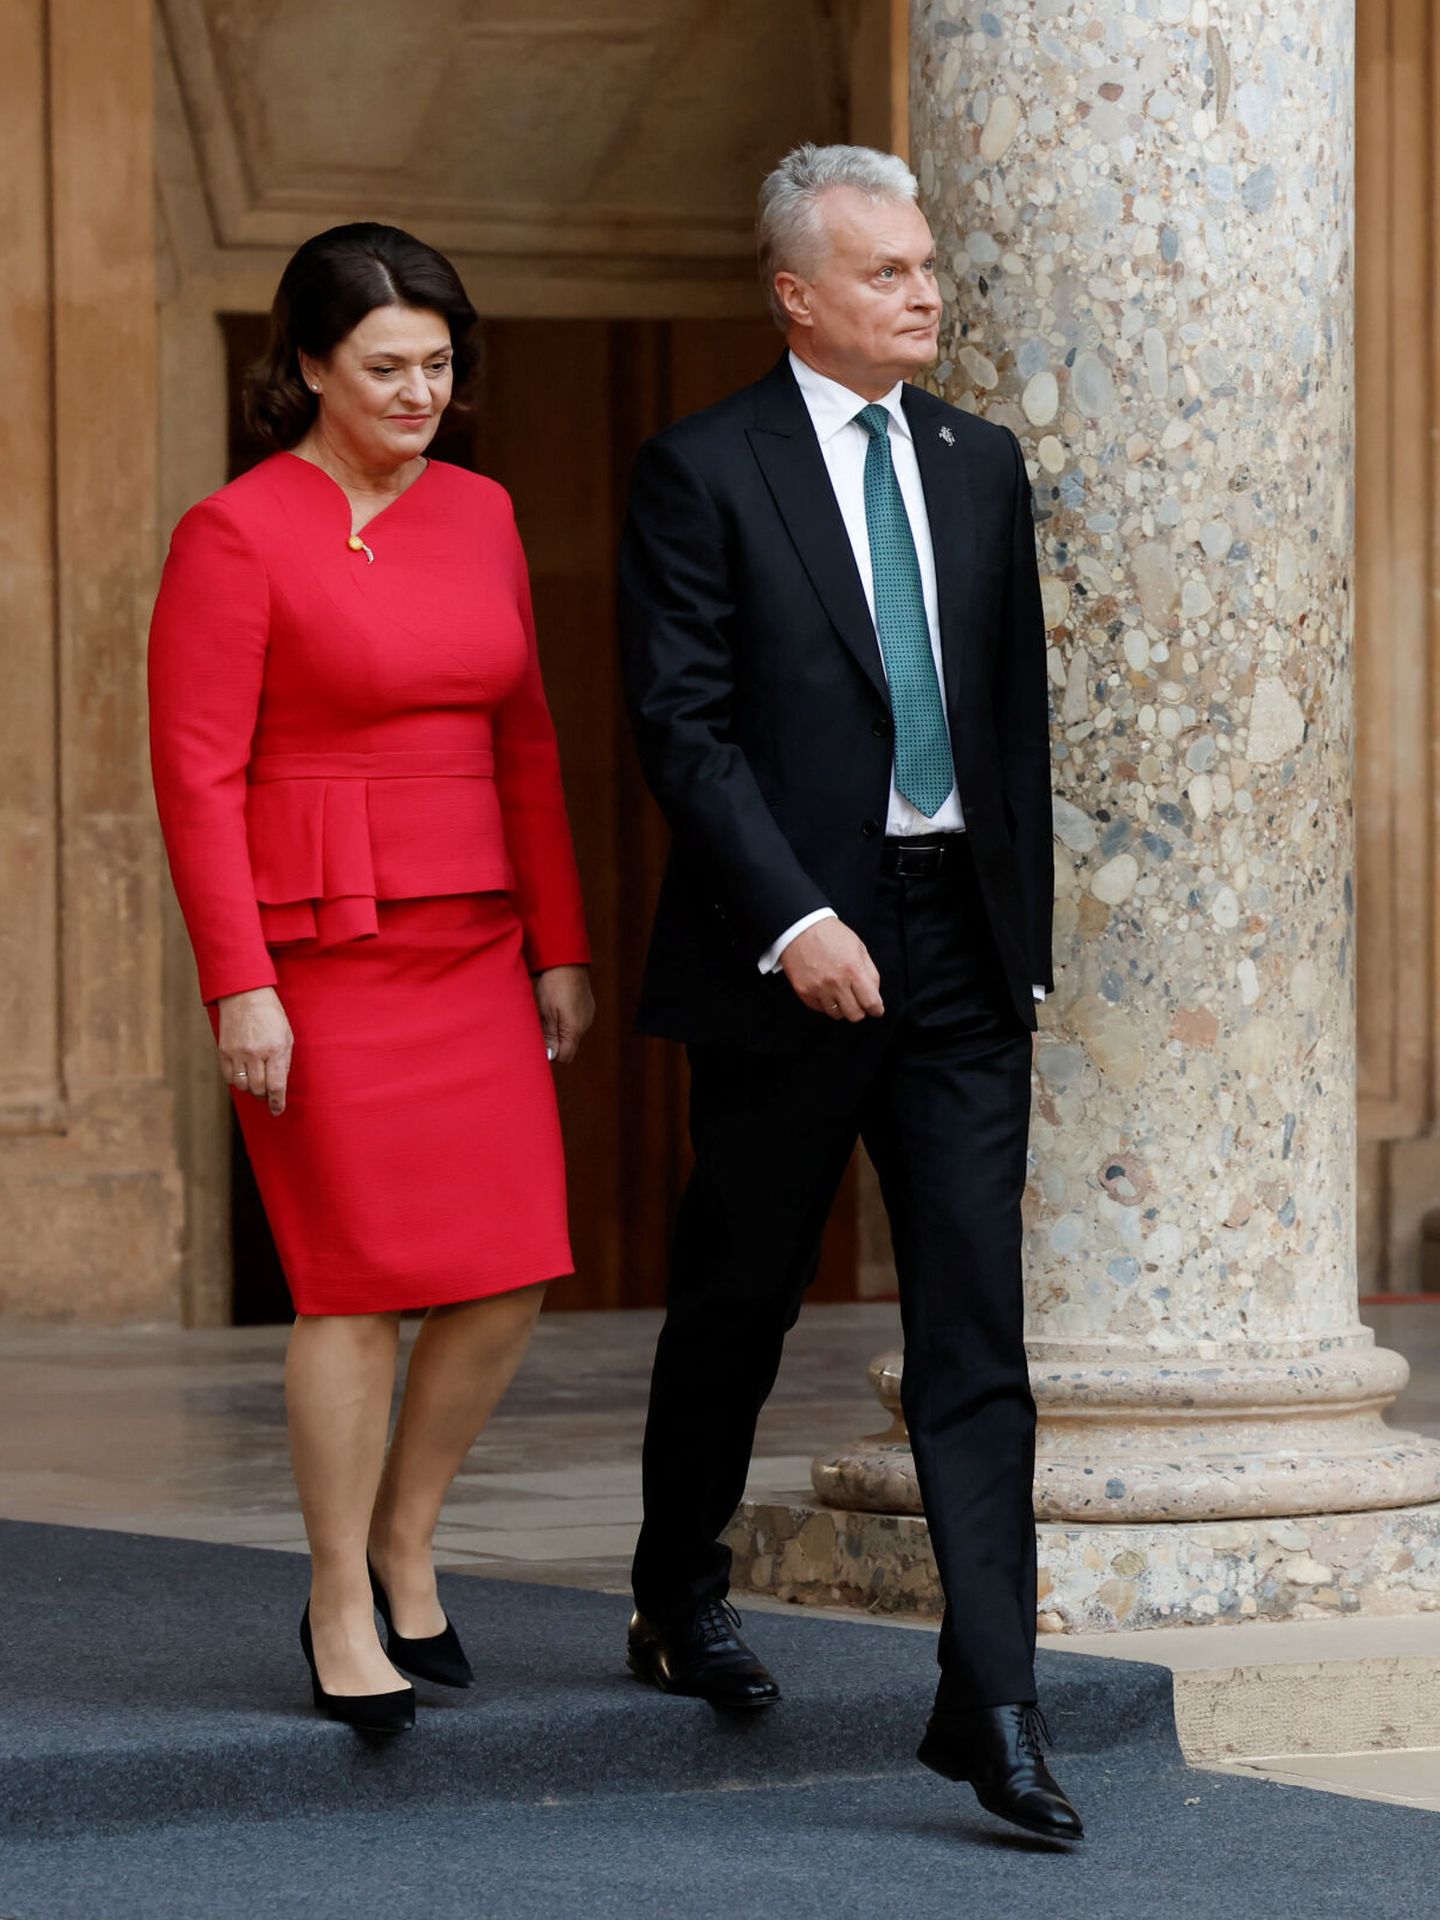 El presidente de Lituania, Gitanas Nauseda, y su esposa, Diana Nausediene, llegan a la reunión en Granada. (Reuters/Jon Nazca)